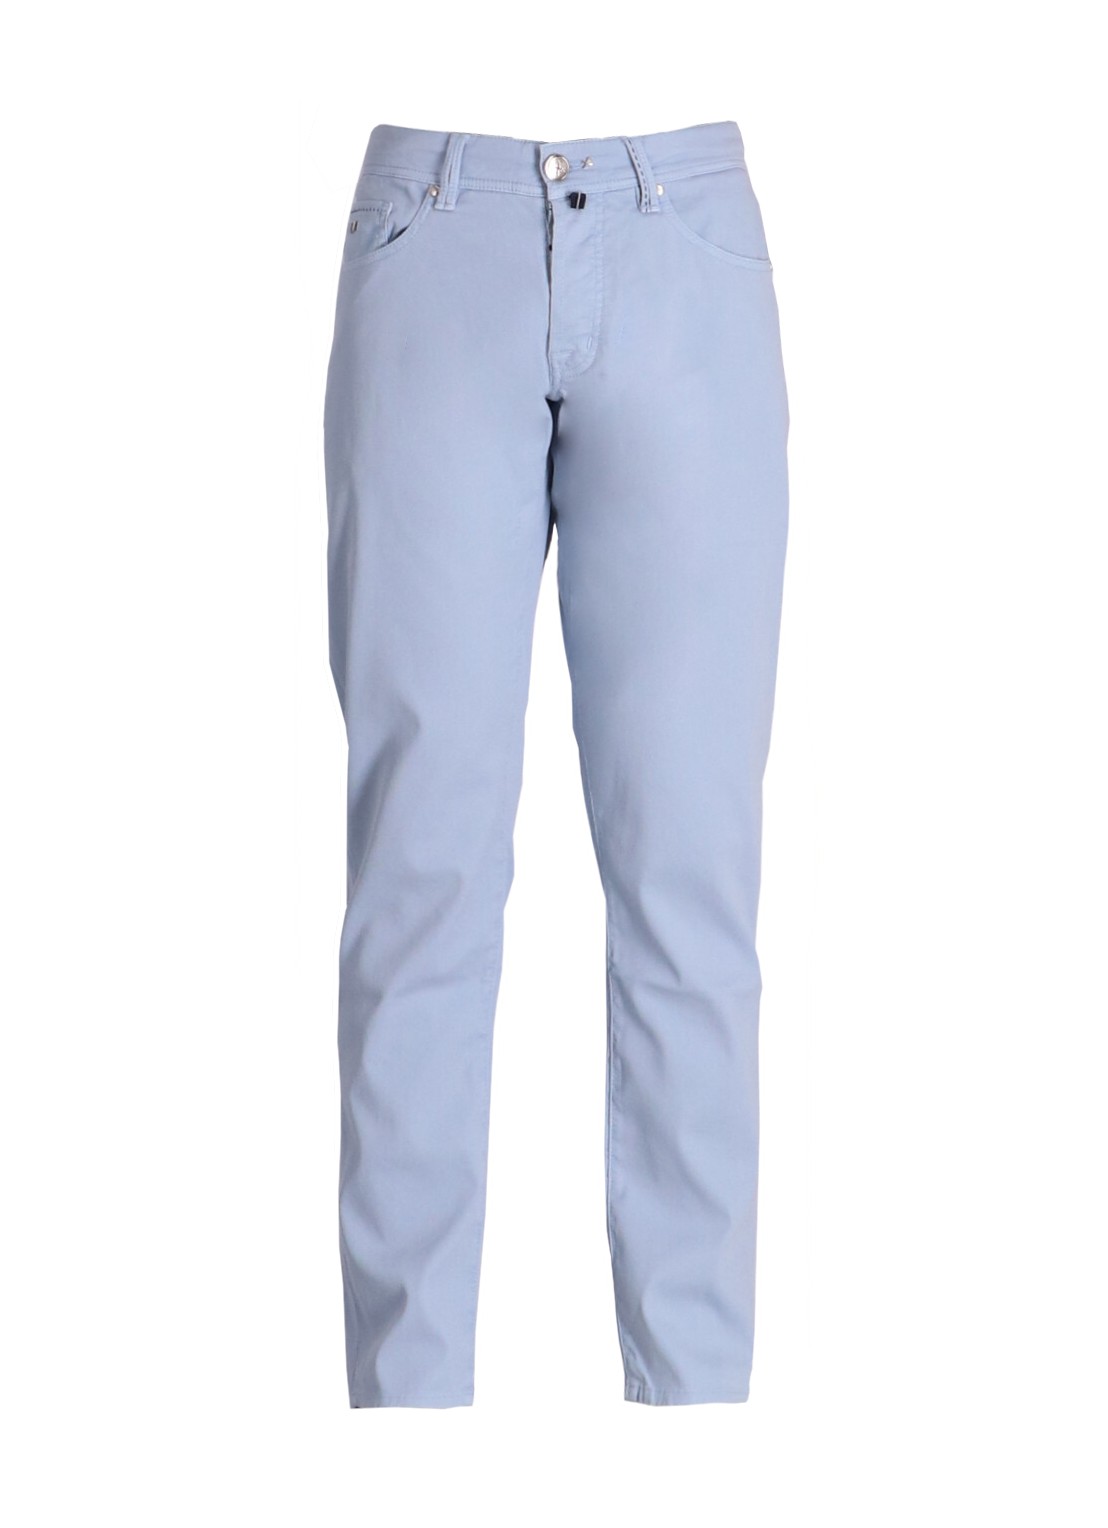 Pantalon jeans tramarossa denim manleonardo button - leonardo button 466 talla 36
 